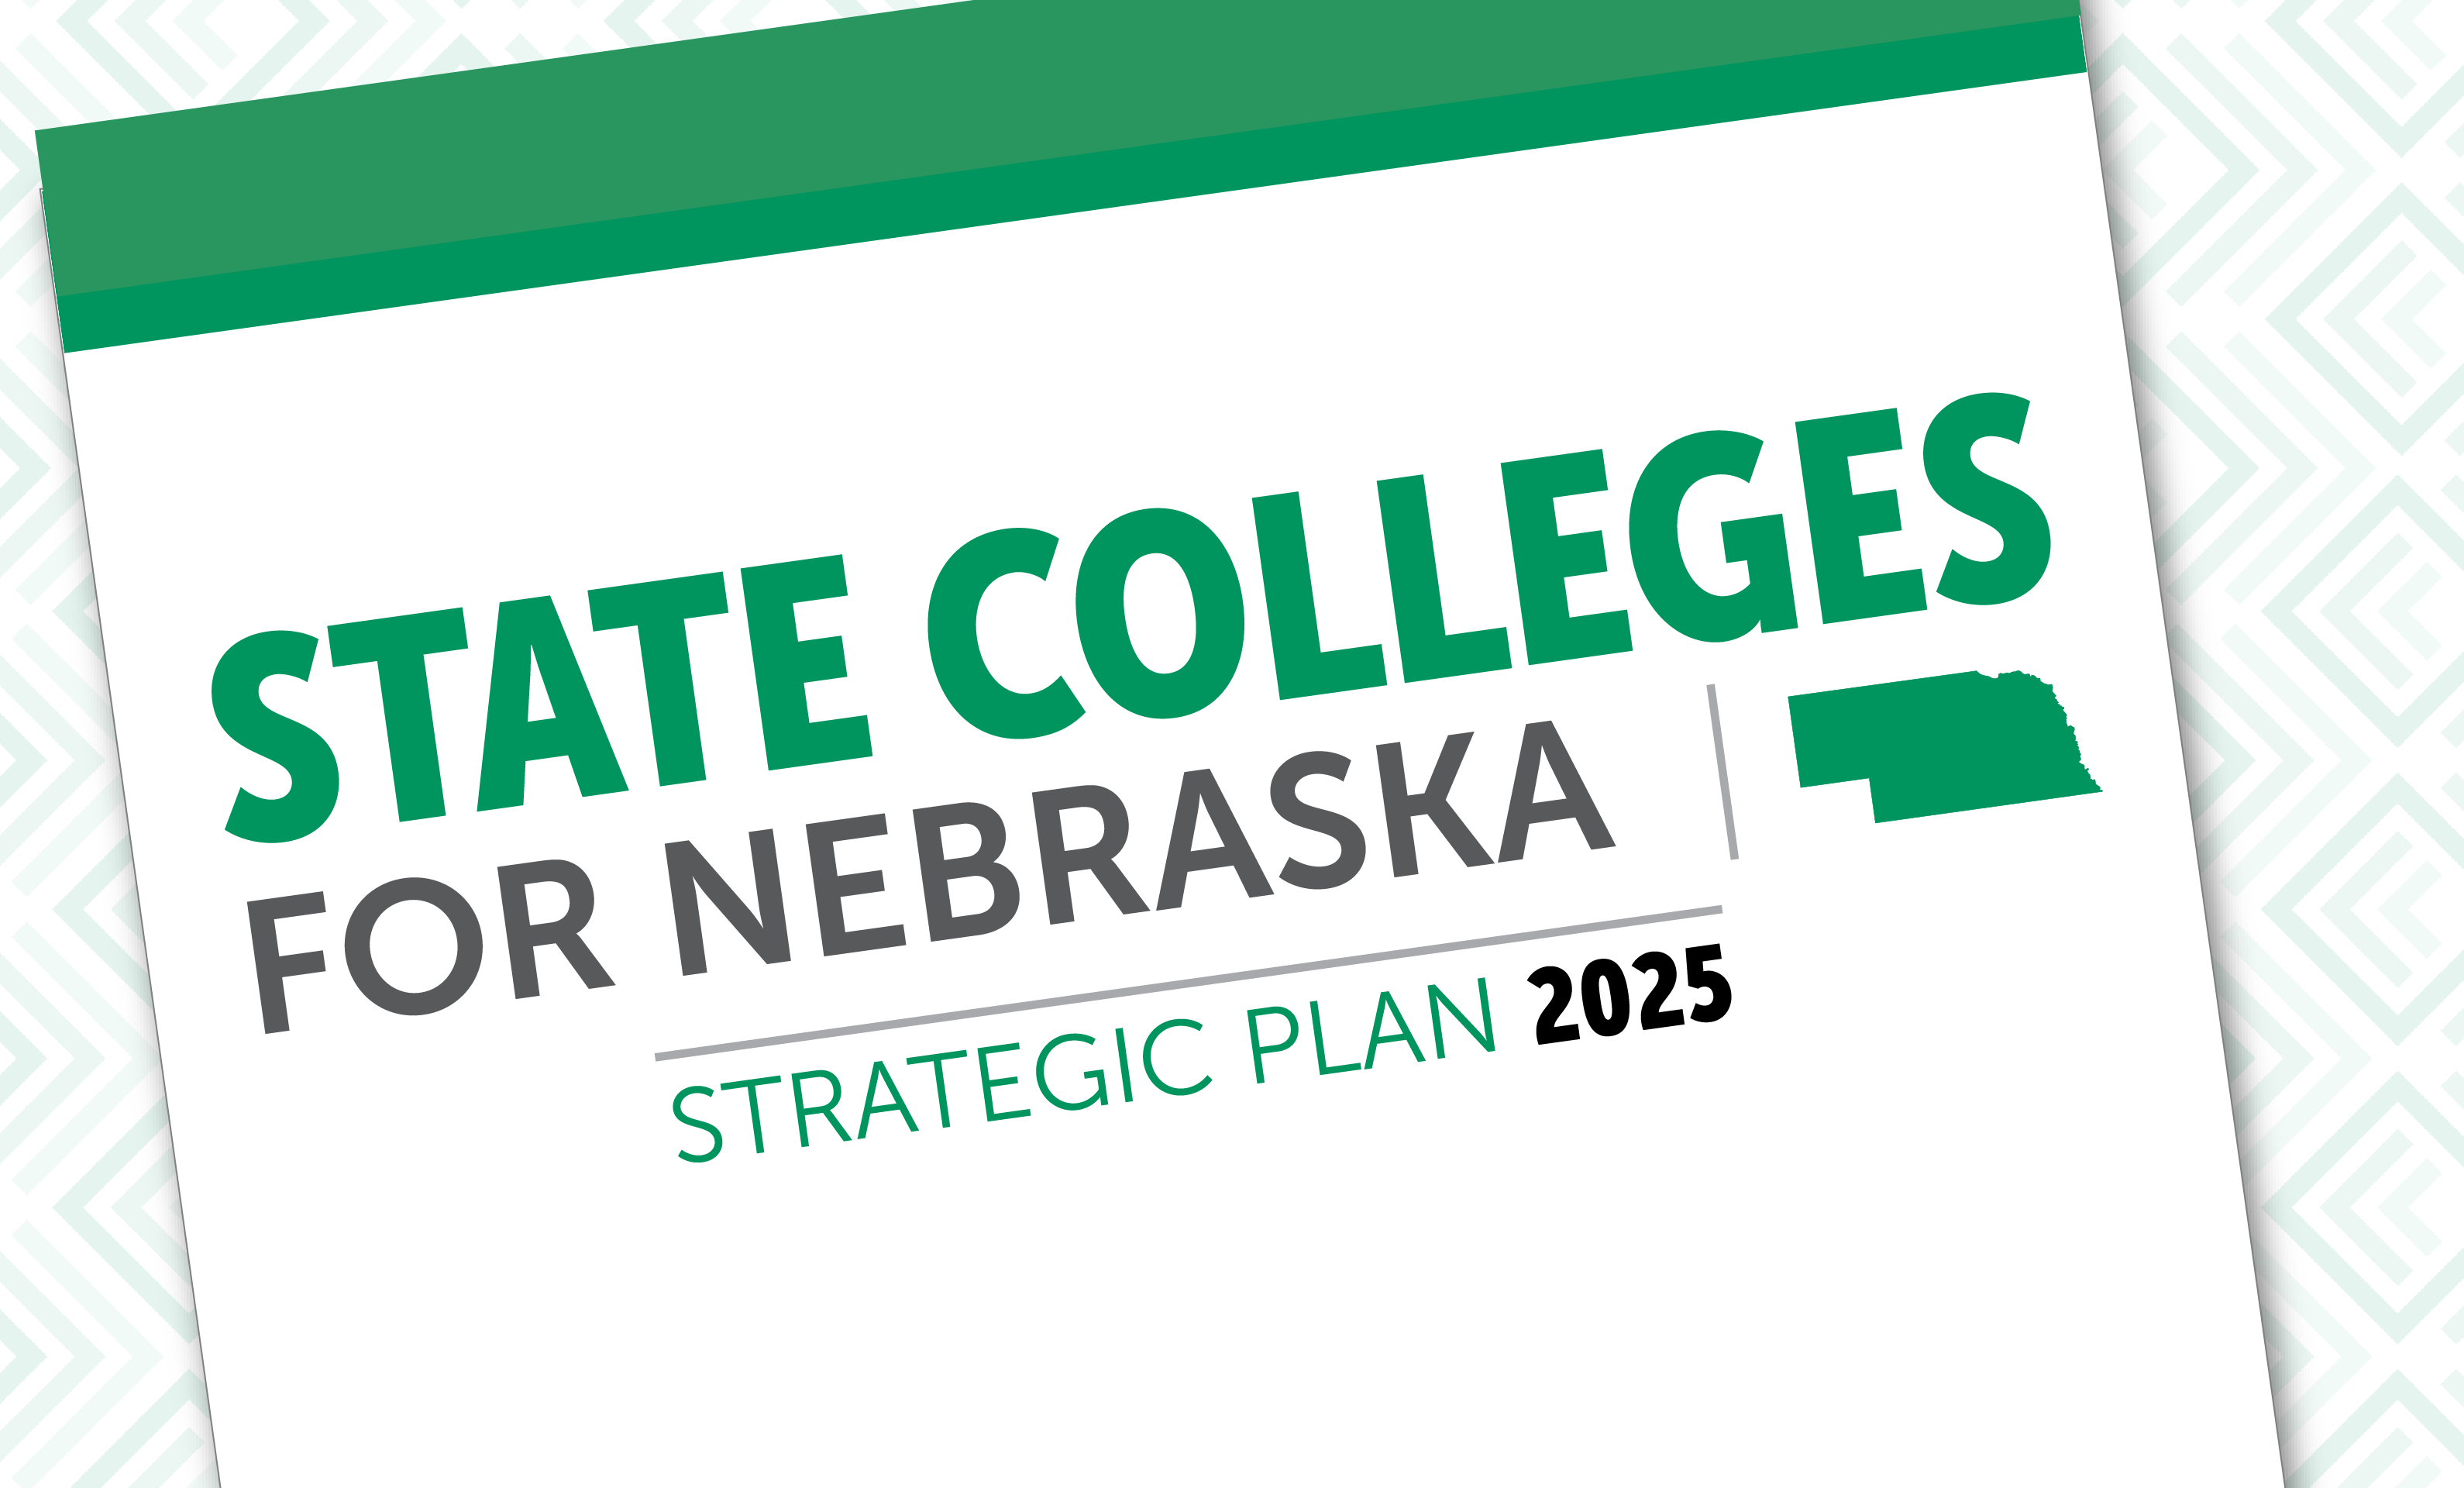 State Colleges for Nebraska